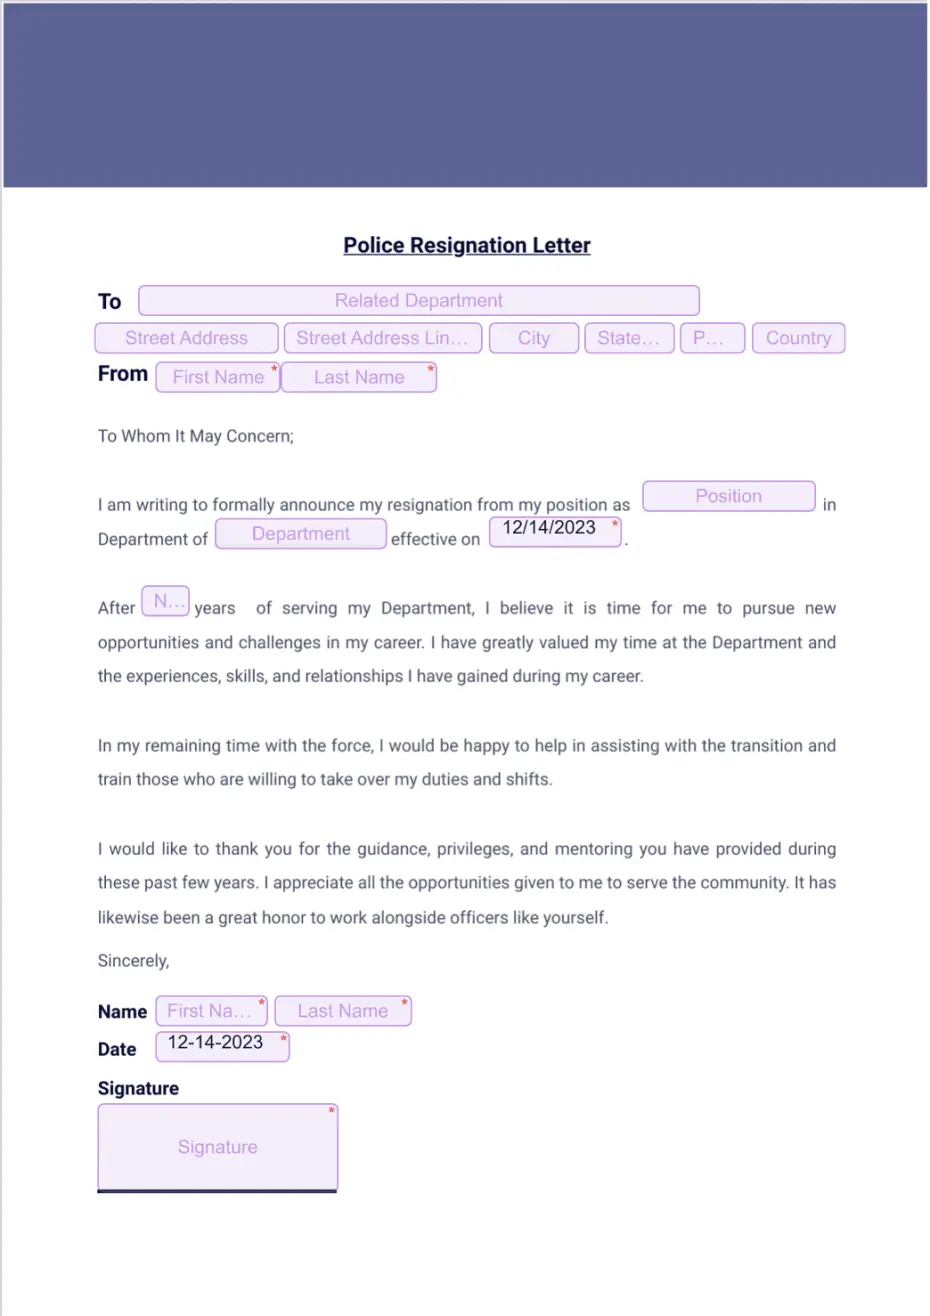 Police Resignation Letter